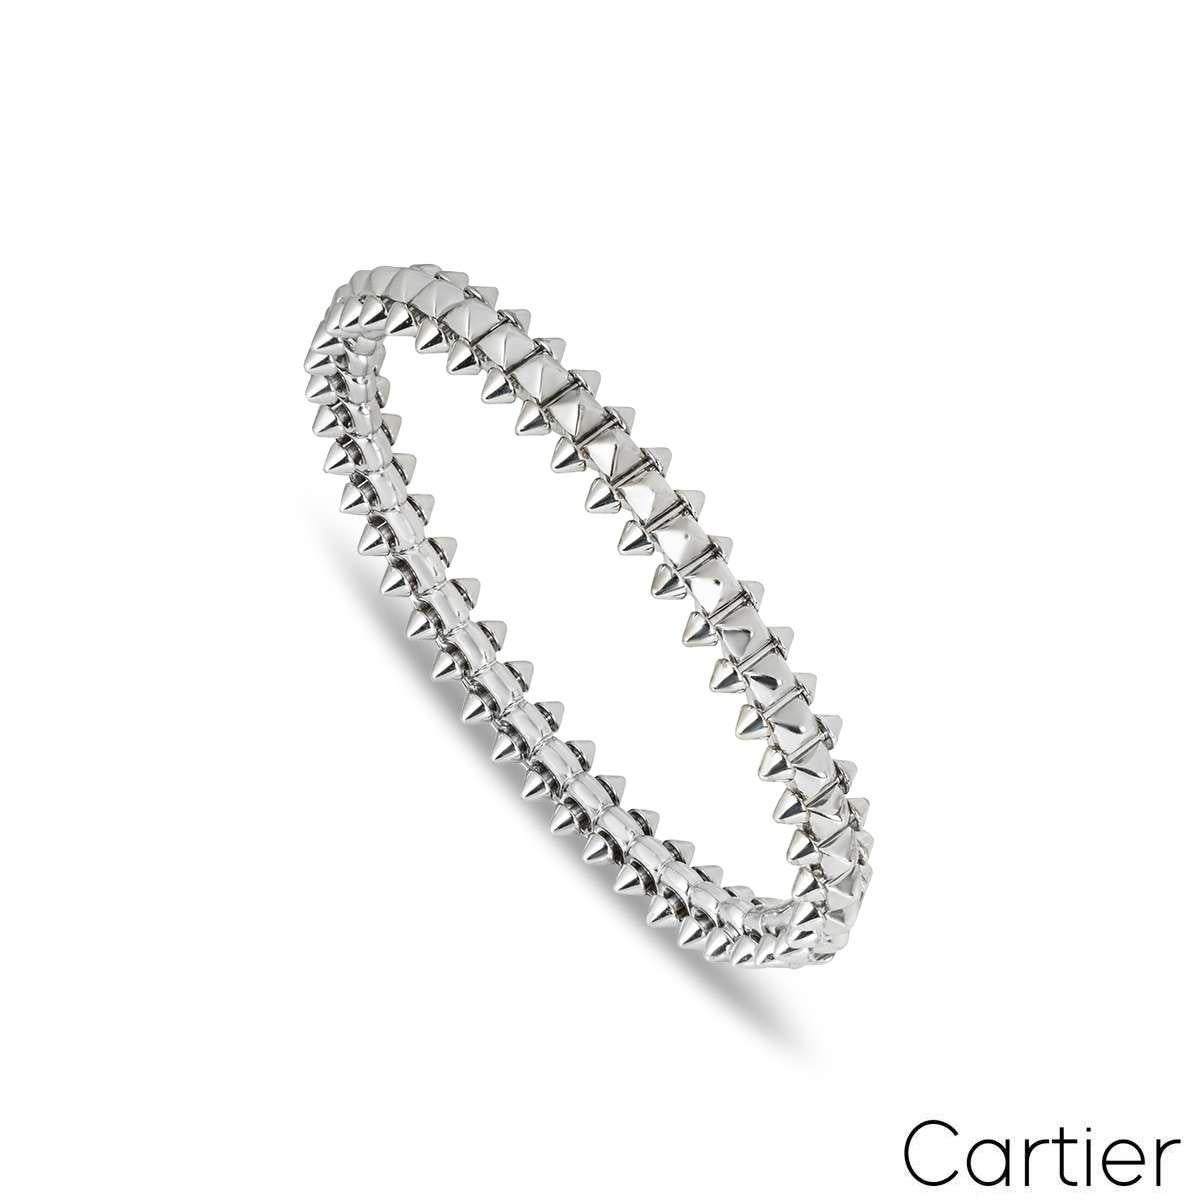 Un bracelet en or blanc 18 carats de la collection Clash de Cartier. Le bracelet se compose d'un centre clouté, complété par de plus petits clous sur tout le pourtour. Le fermoir fonctionne par un simple système de levage et de poussée sur la